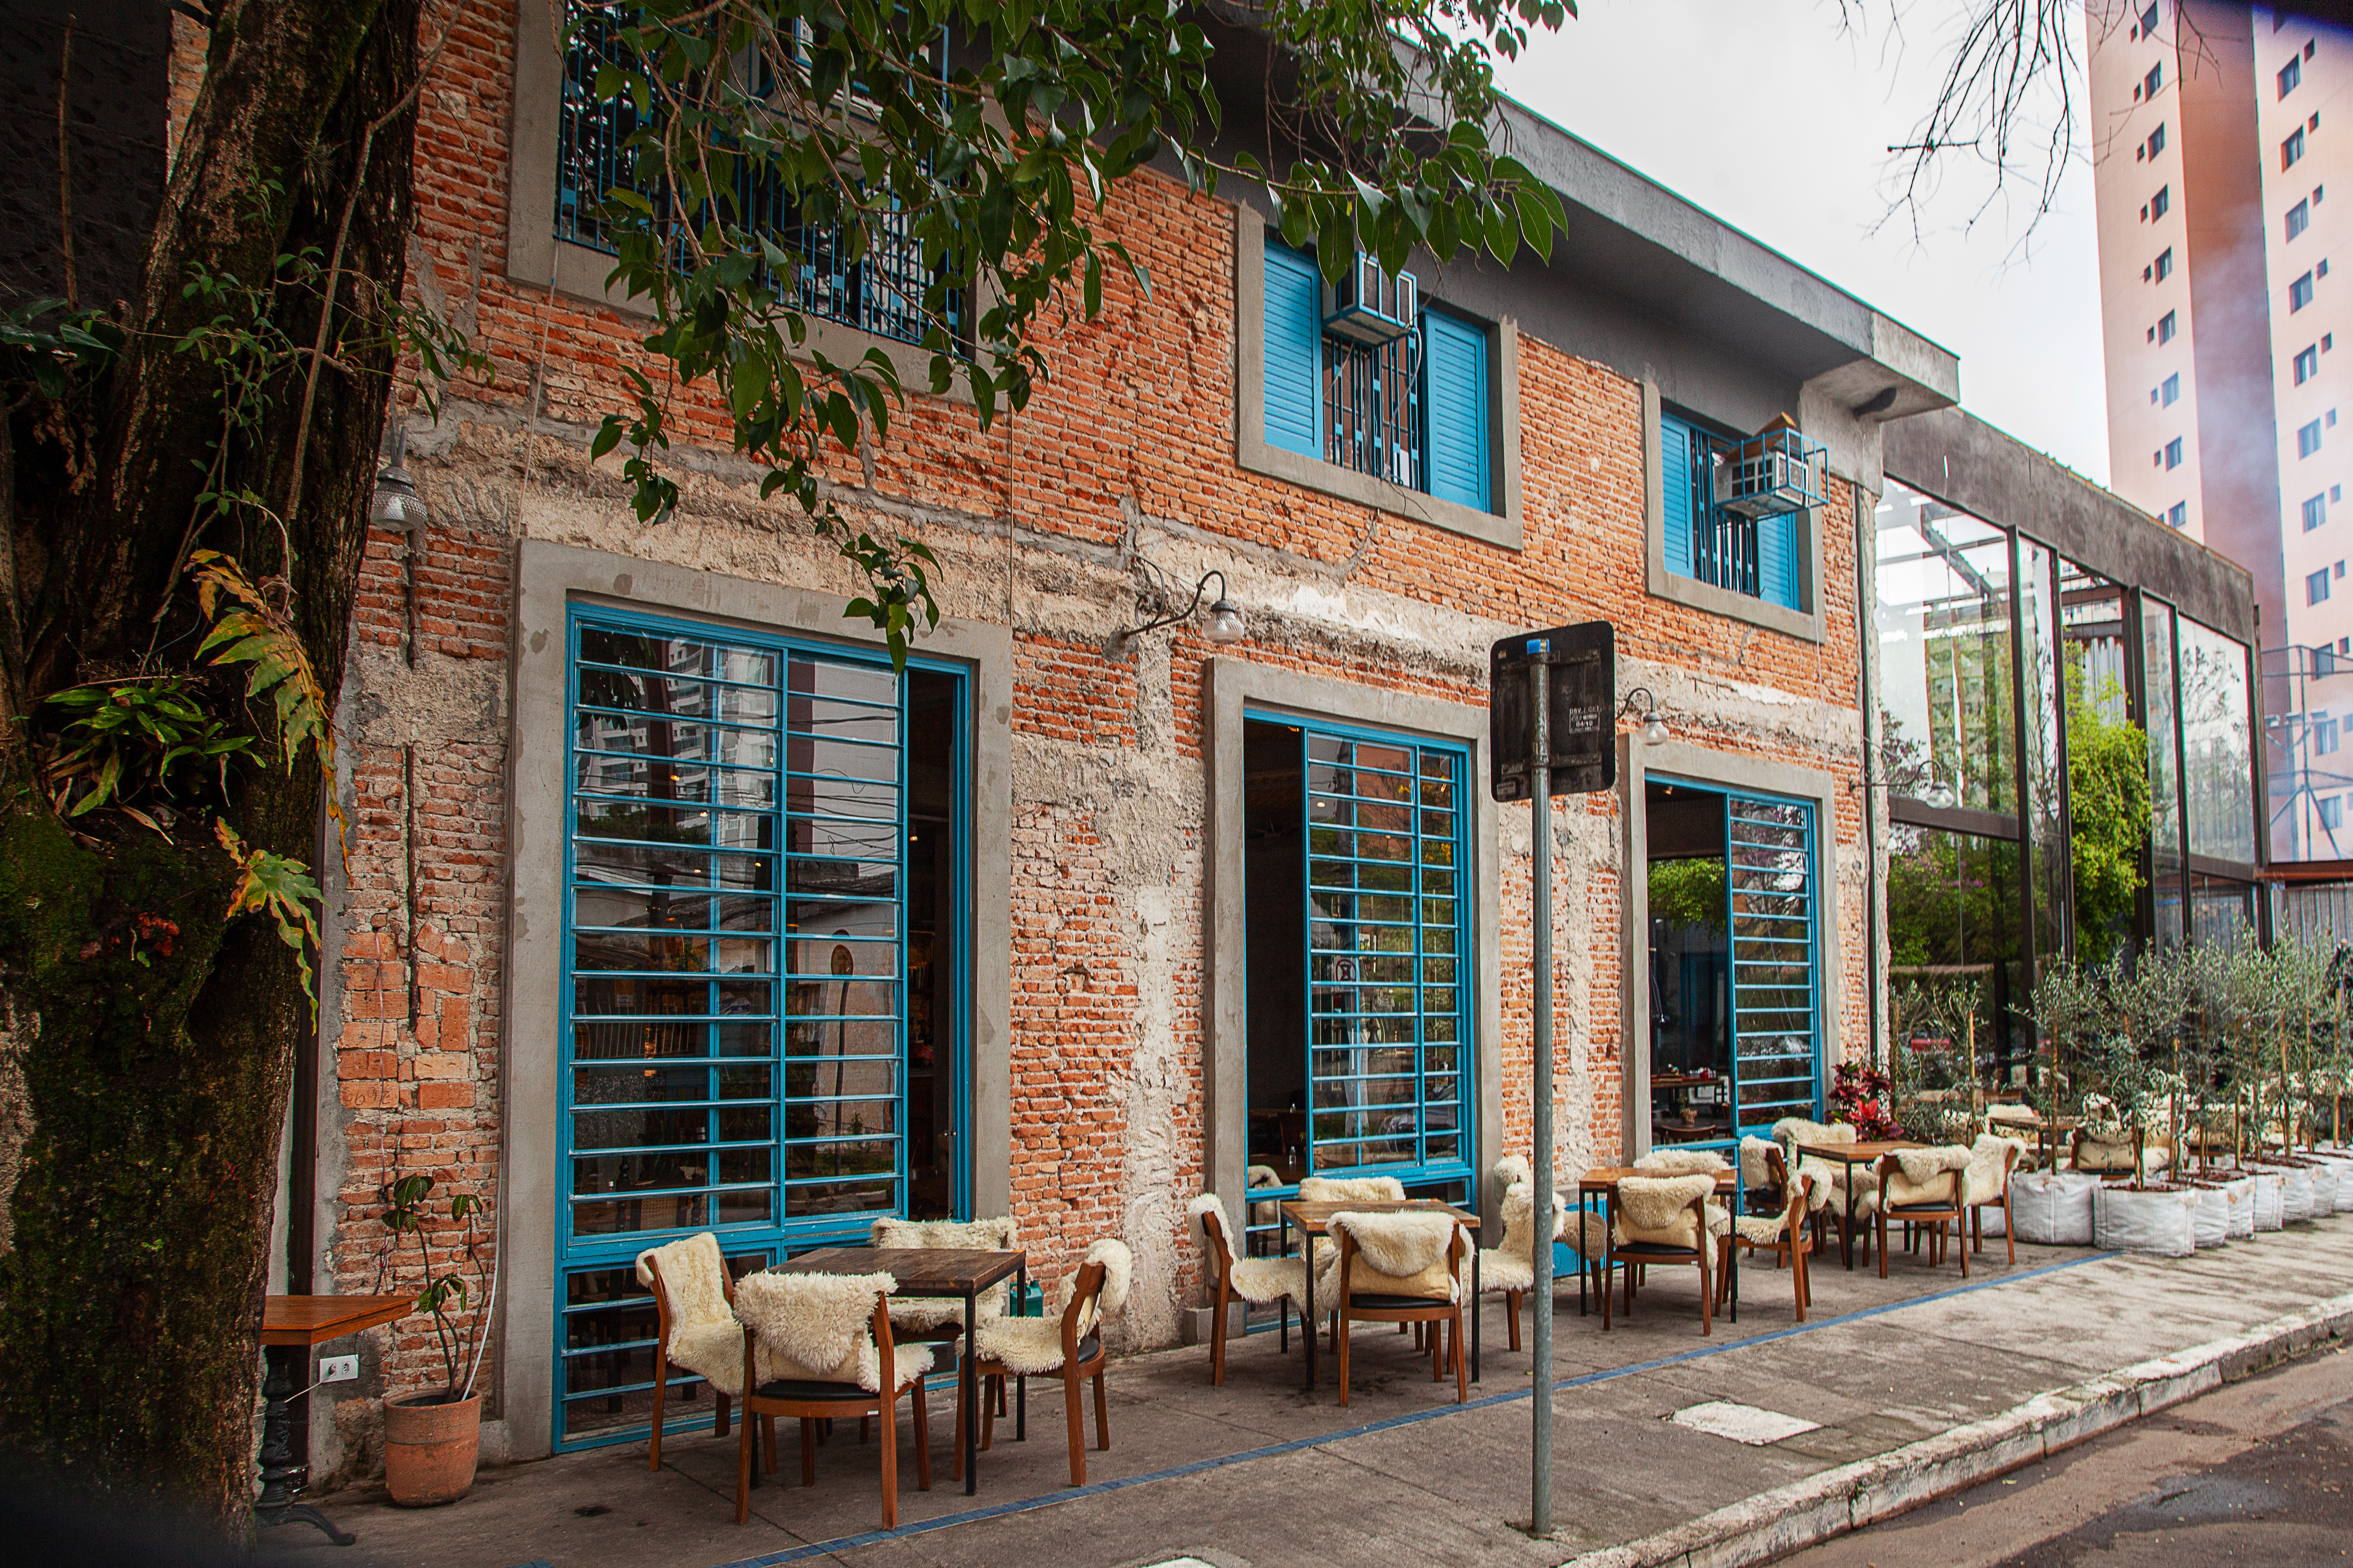 Fachada do bar Quintana com paredes de tijolinhos e mesas na calçada com cadeiras cobertas por cobertores de pelo.